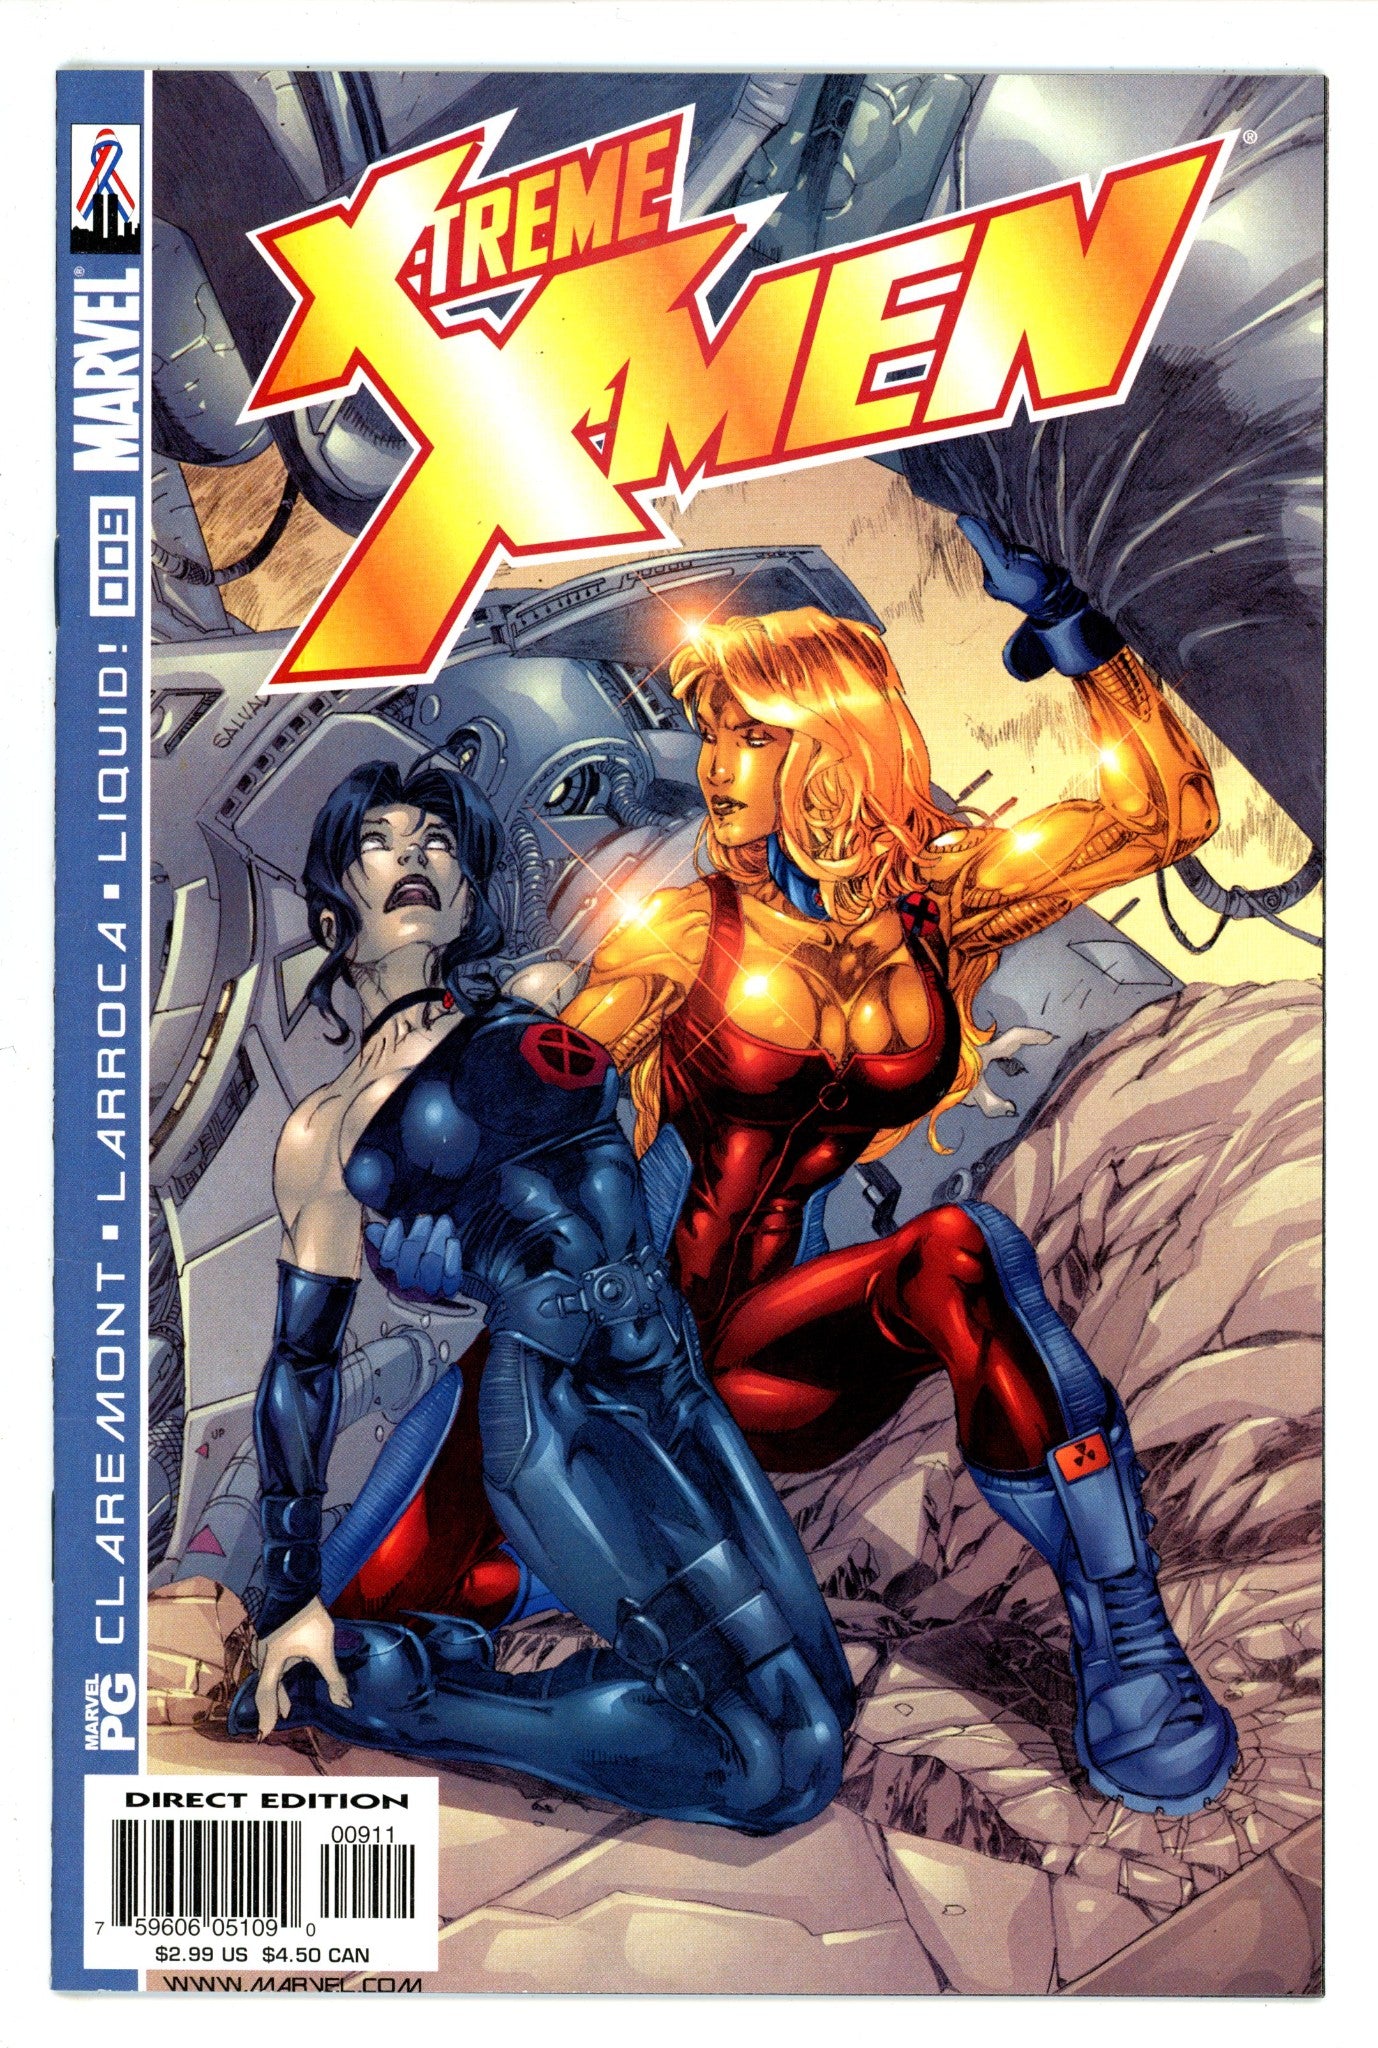 X-Treme X-Men Vol 1 9 (2001)